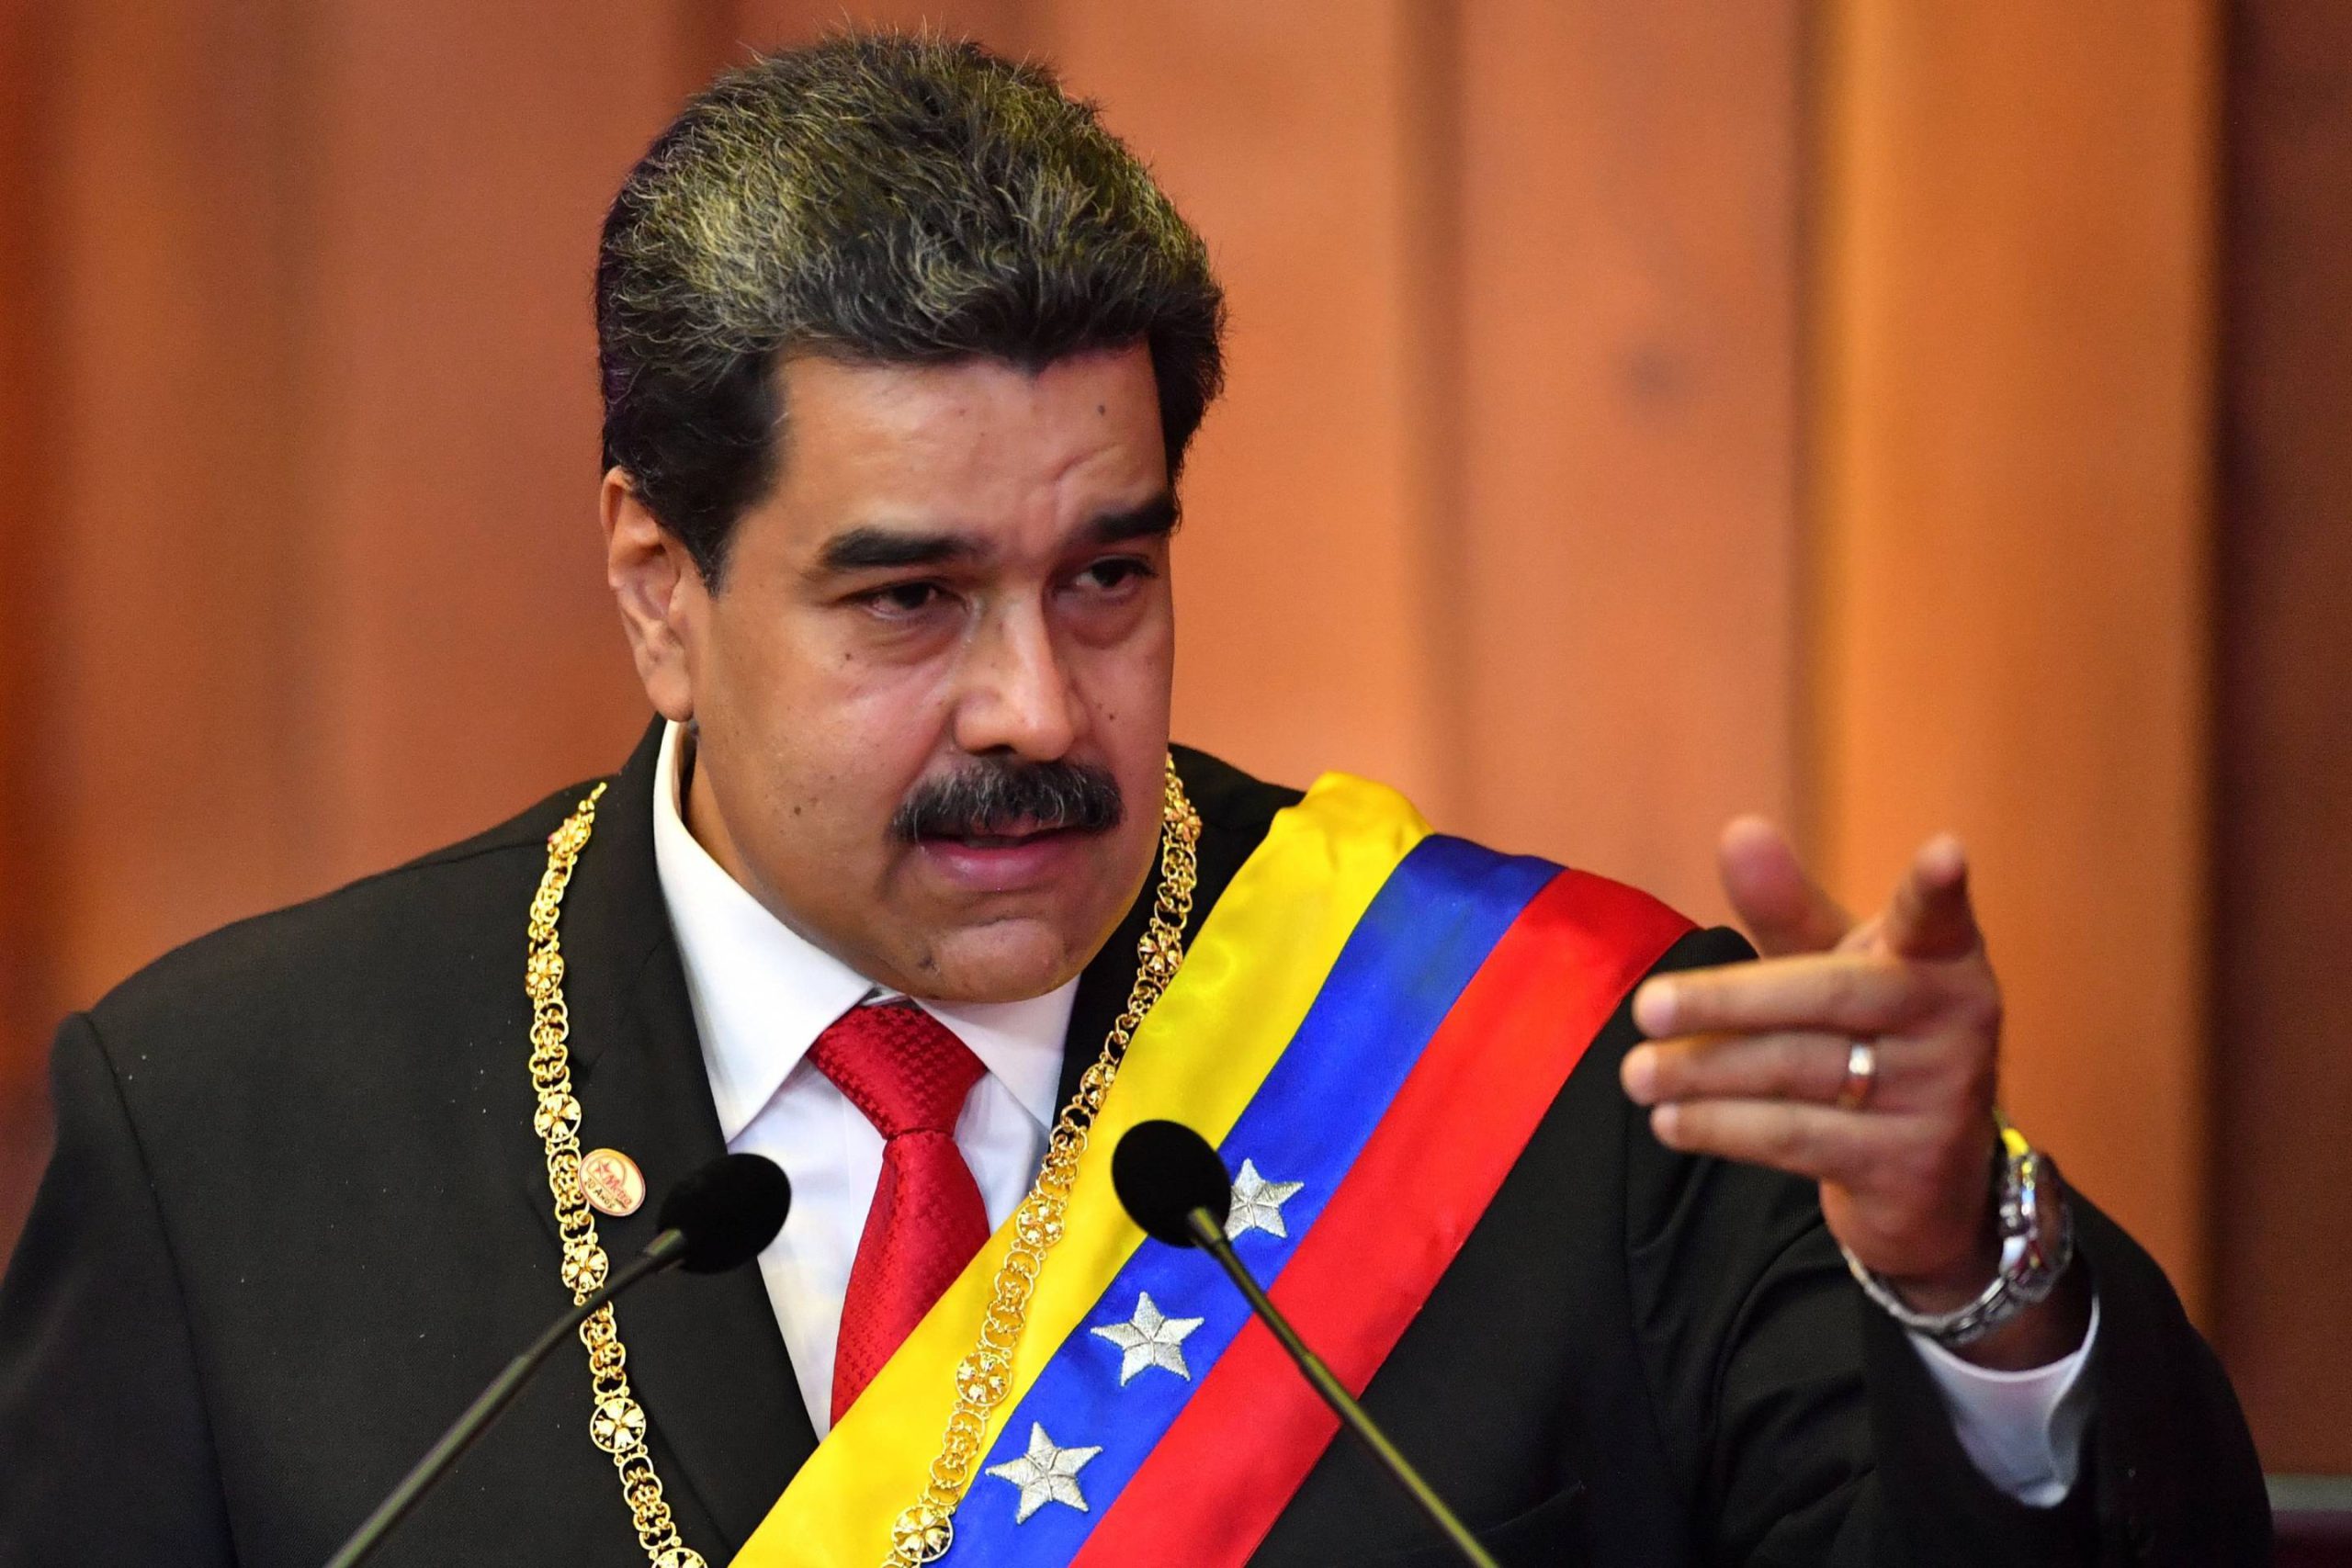  Dragoste mare între dictatori! Preşedintele venezuelean îşi exprimă sprijinul pentru Putin